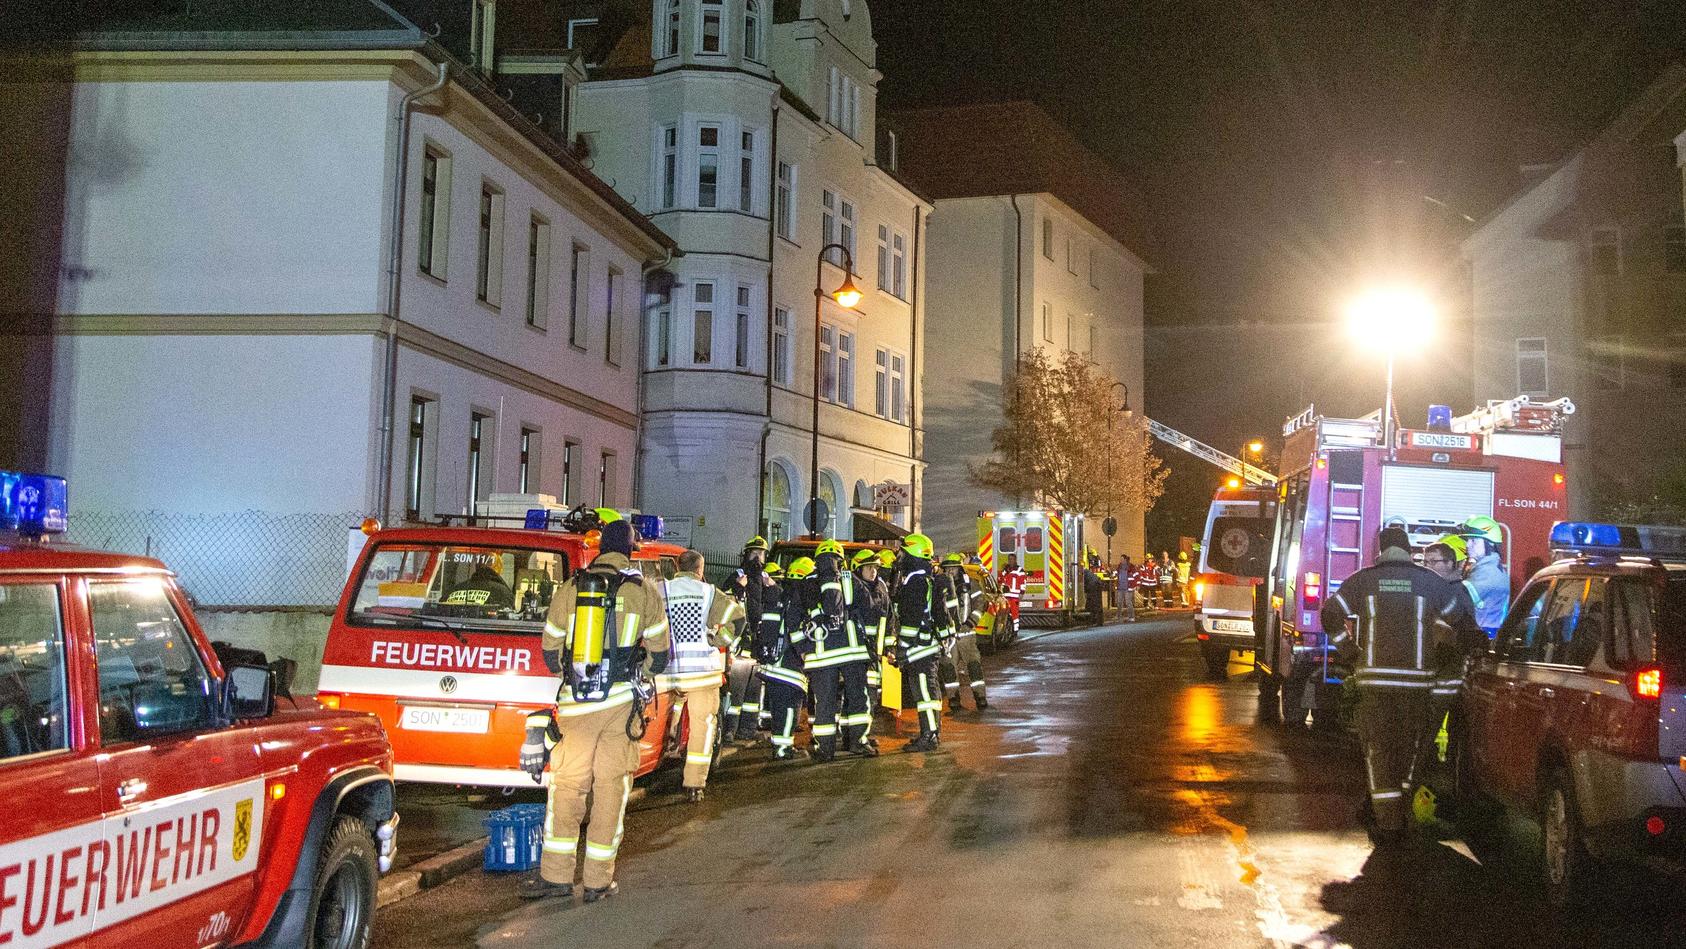 11.11.2018, Thüringen, Sonneberg: Rettungskräfte der Feuerwehr sind im Einsatz an einer Einrichtung für betreutes Wohnen. Bei dem einem Brand sind 27 Menschen verletzt worden. Laut Polizei brach ein Feuer mit starker Rauchentwicklung im Heizungsraum 